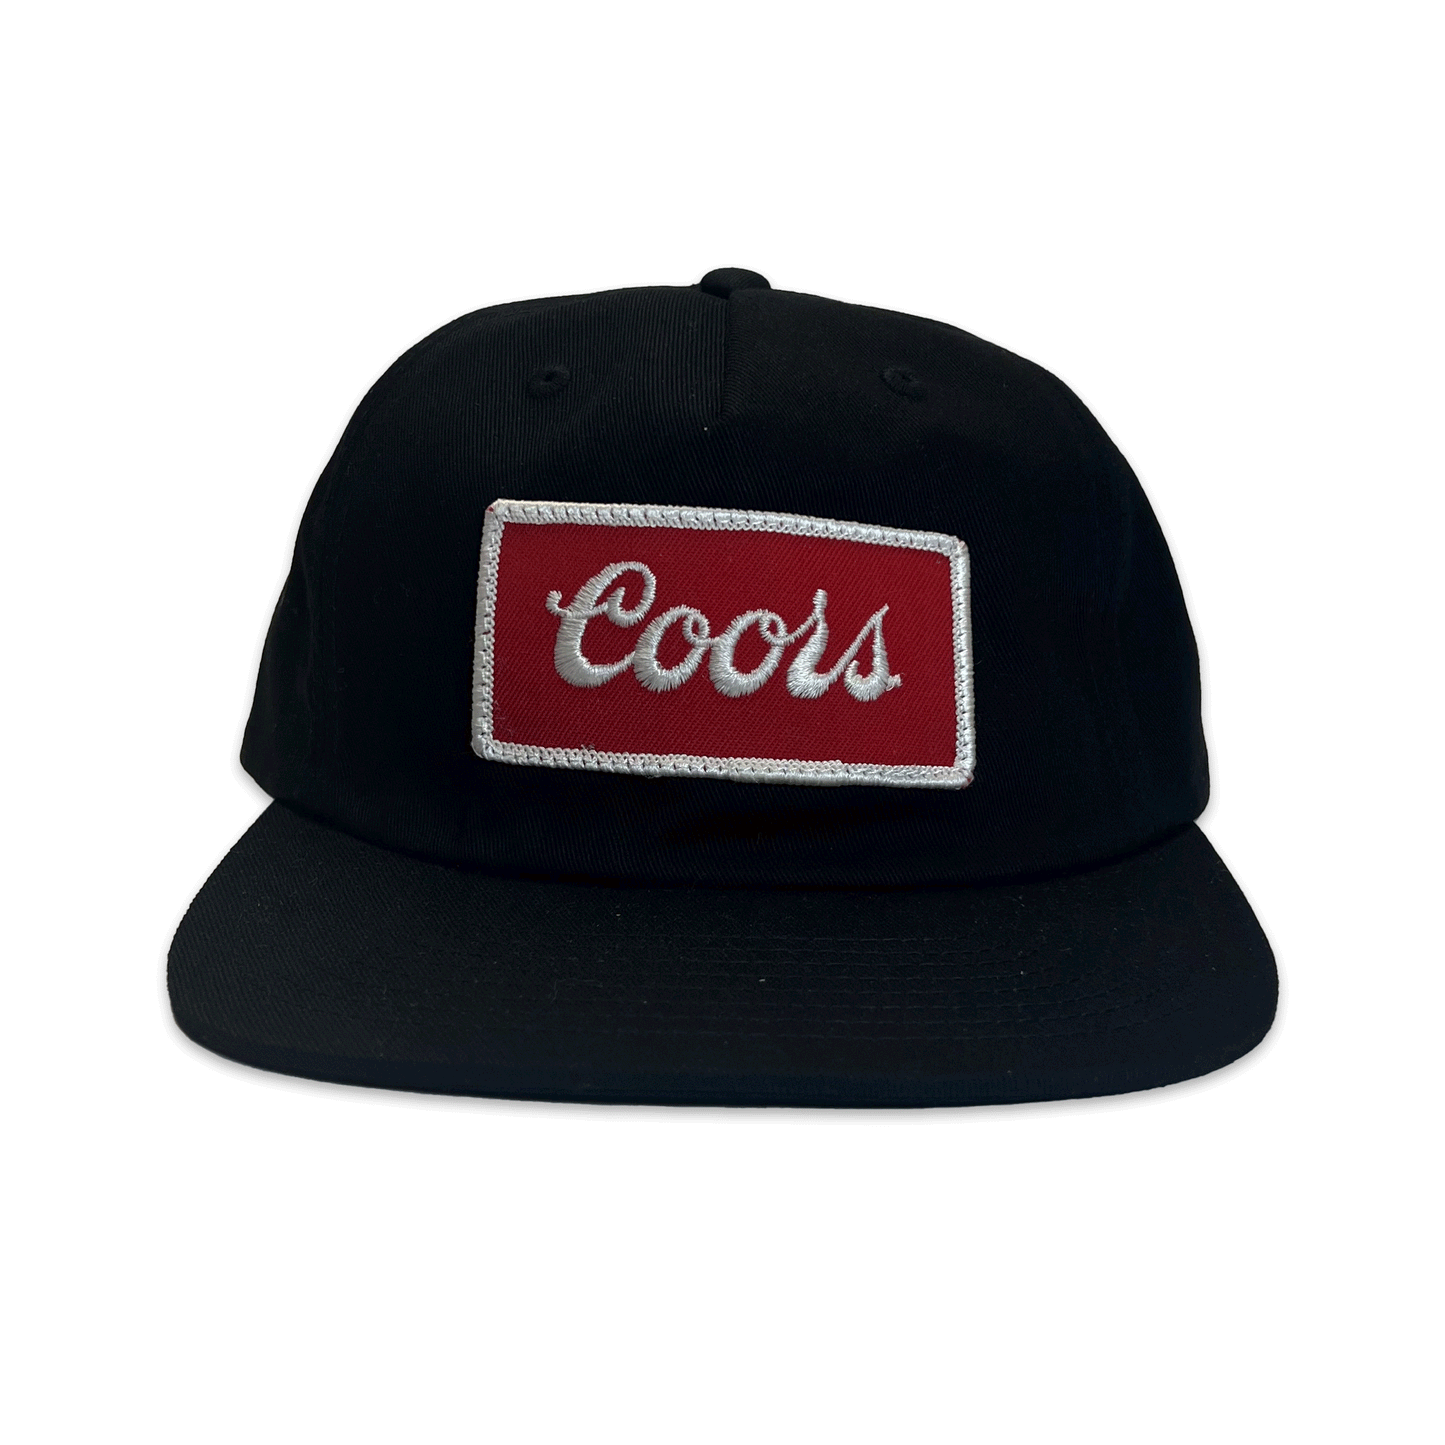 Coors. Hat. Black.